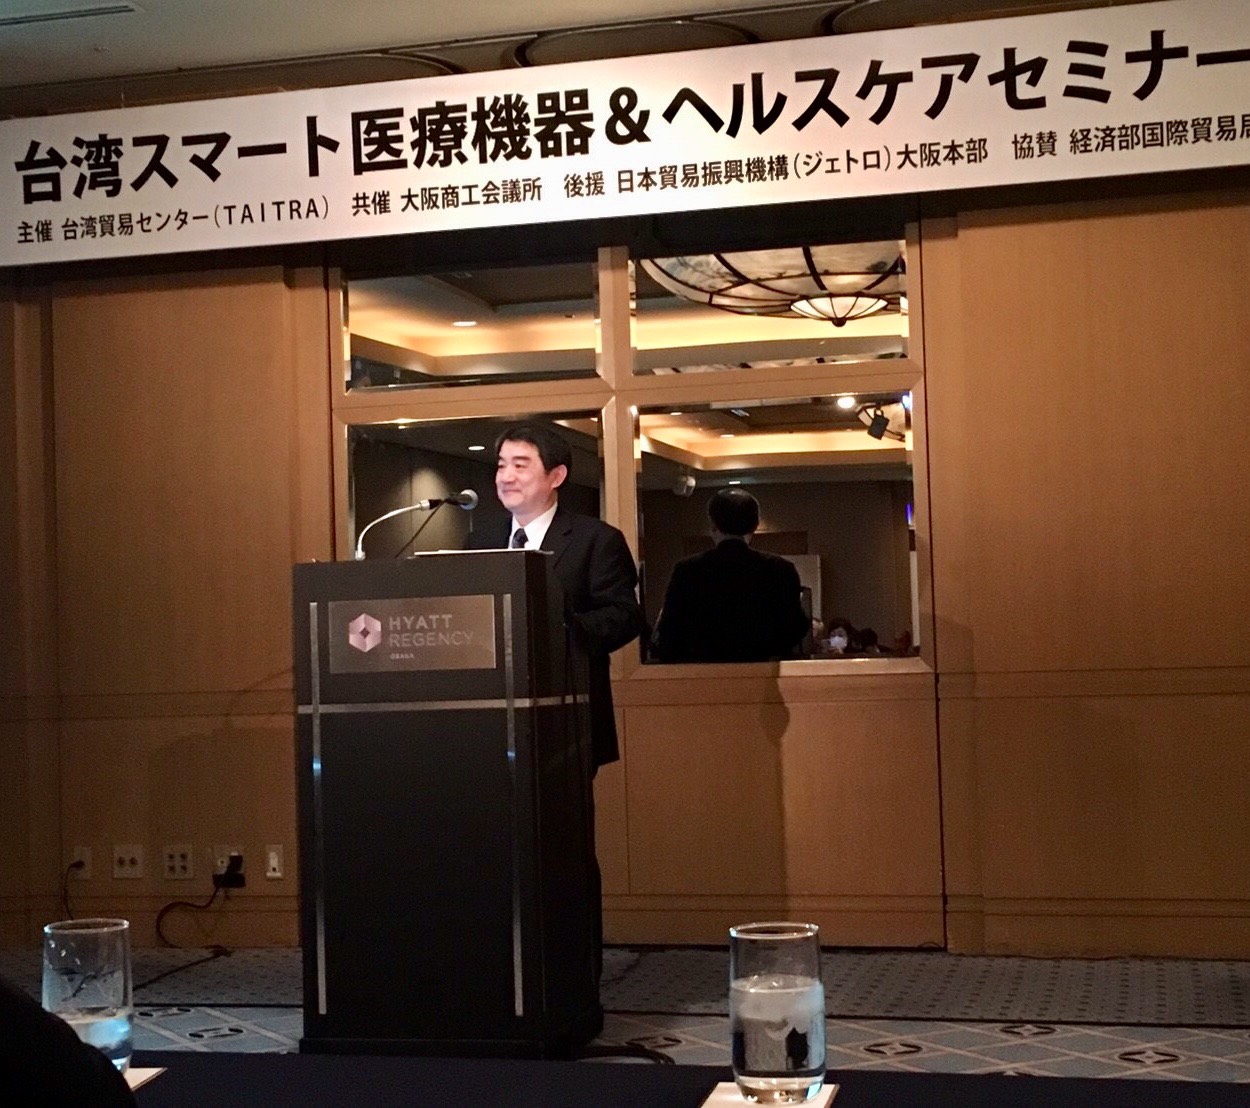 【即時訊息】醫材公會日本-大阪「台灣智慧醫療及健康照護」說明會